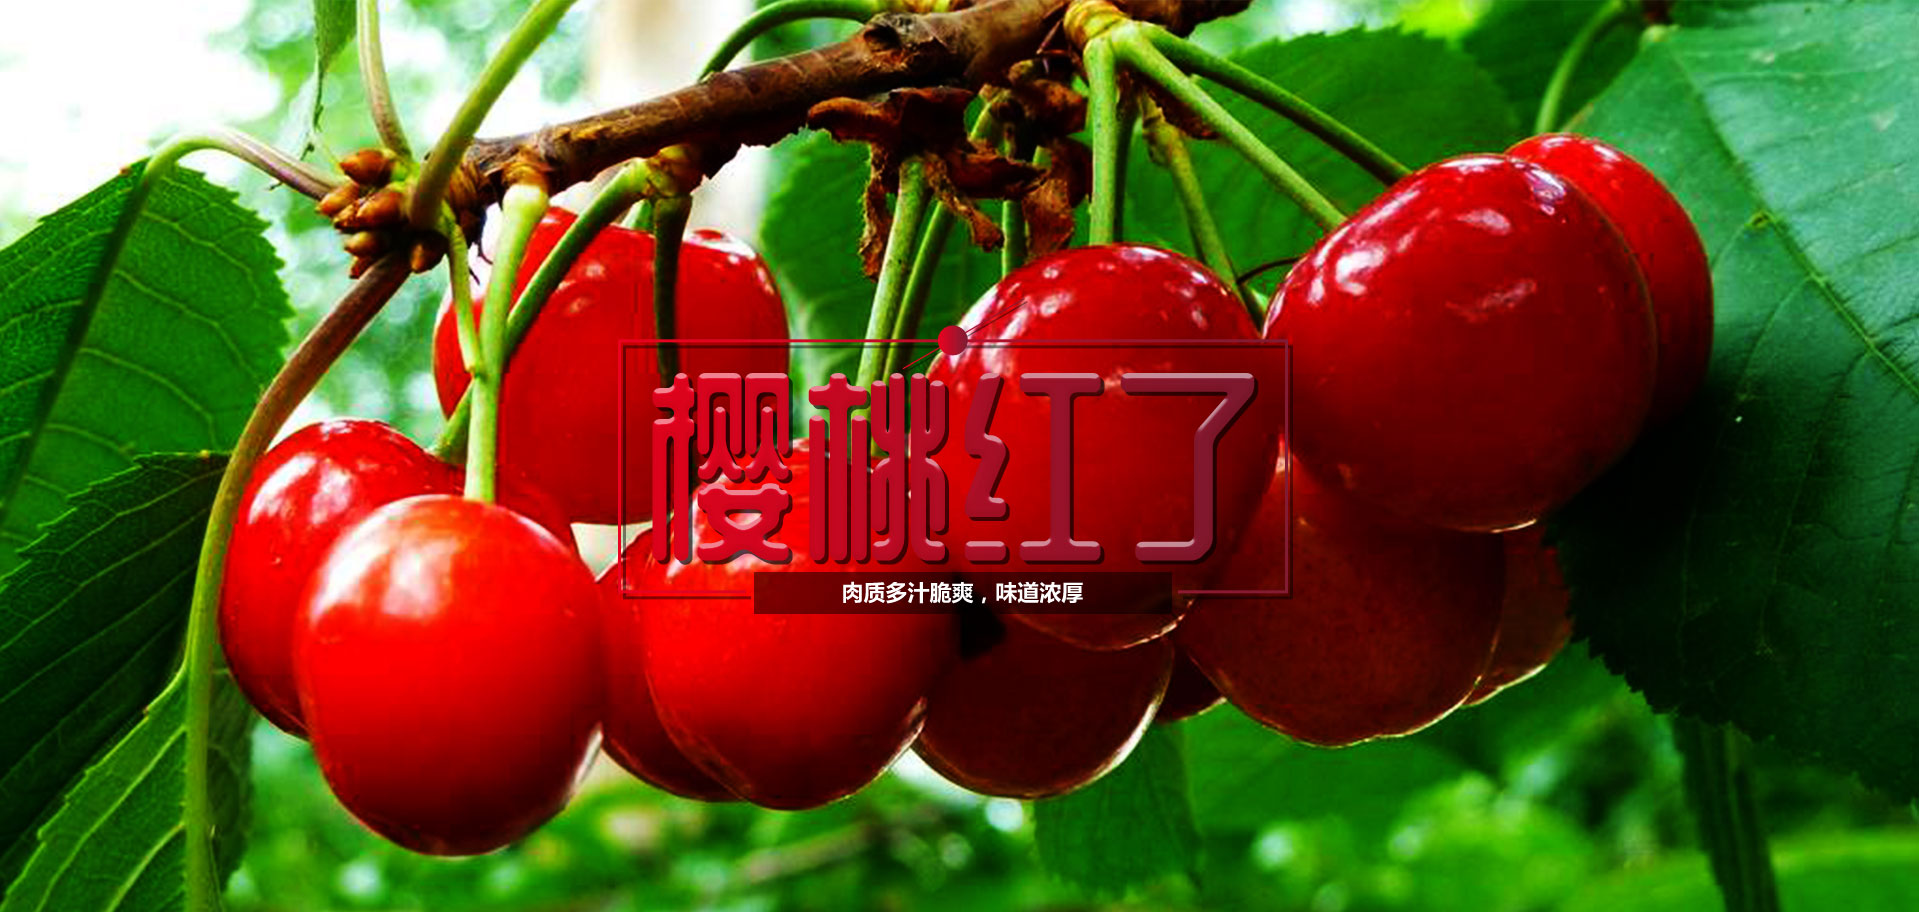 混合水果和浆果 草莓樱桃 库存图片. 图片 包括有 食物, 背包, 生气勃勃, 对象, 开花, 突出, 颜色 - 166121097